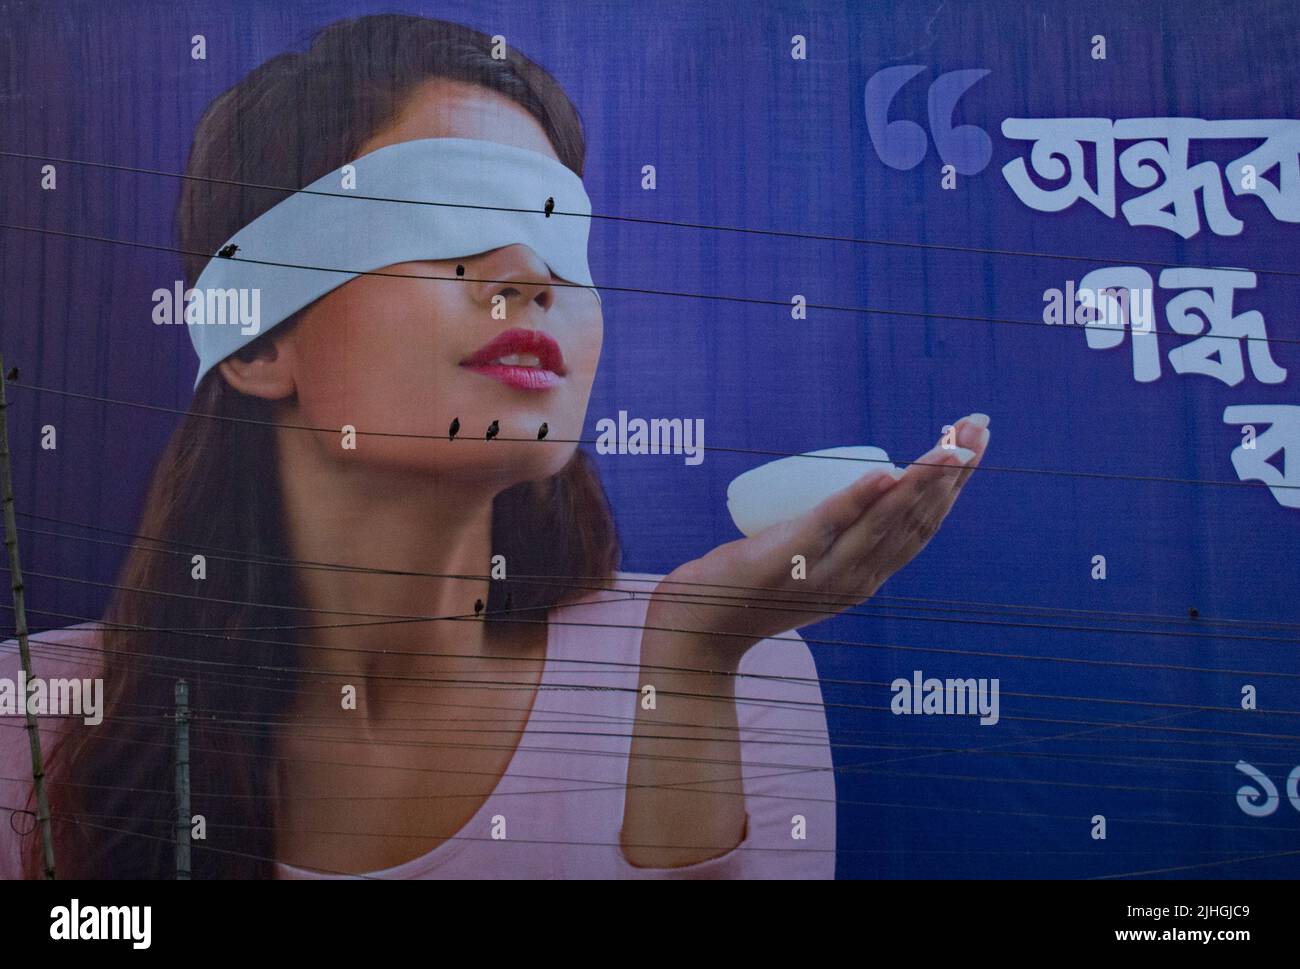 Les oiseaux semblent être les yeux des femmes sur le panneau d'affichage, Bogra, Bangladesh Banque D'Images